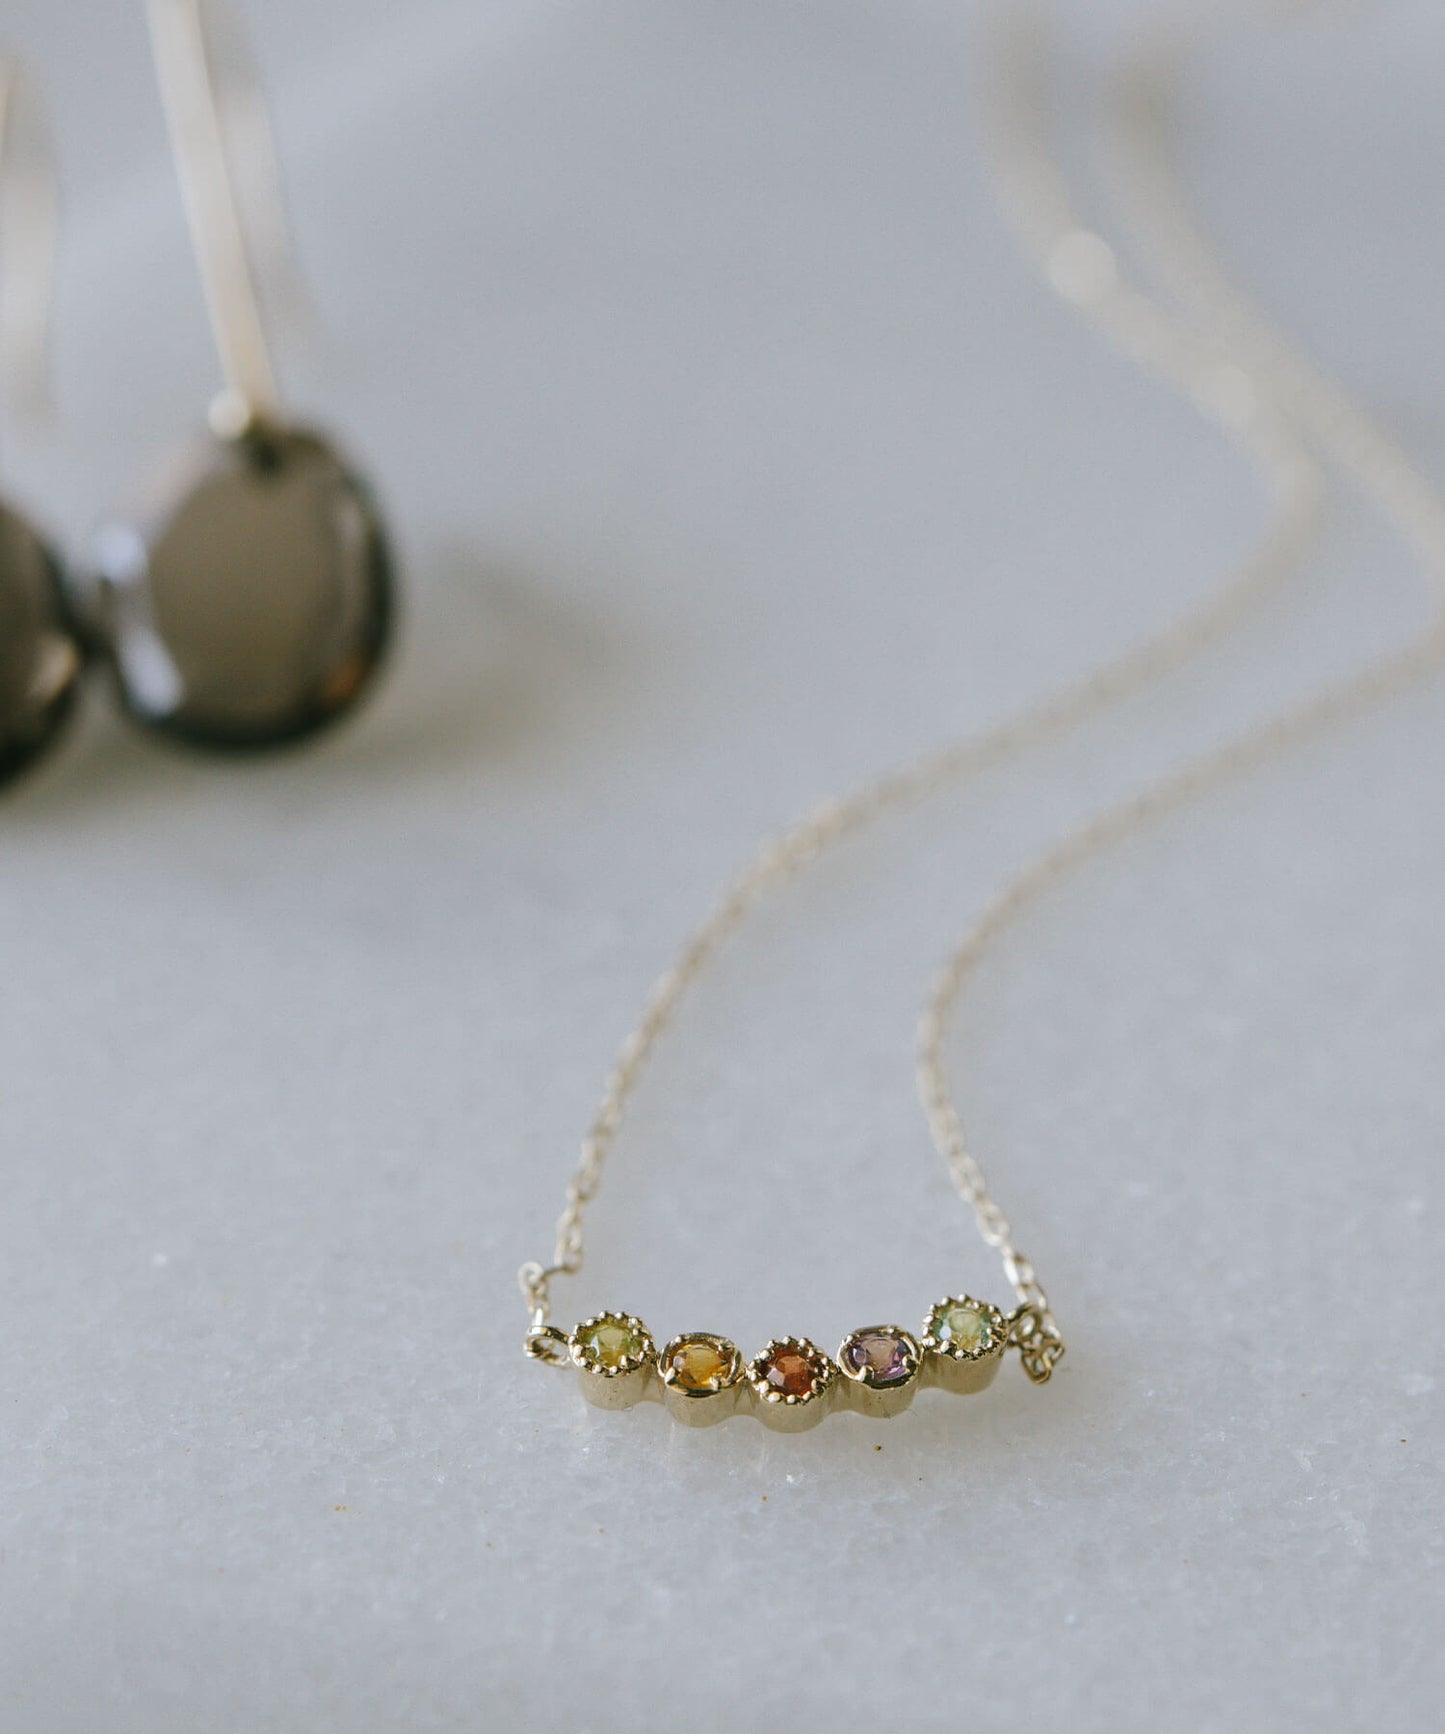 K10 Ombre Gem Stone Necklace | PALVE-QUINT NECKLACE